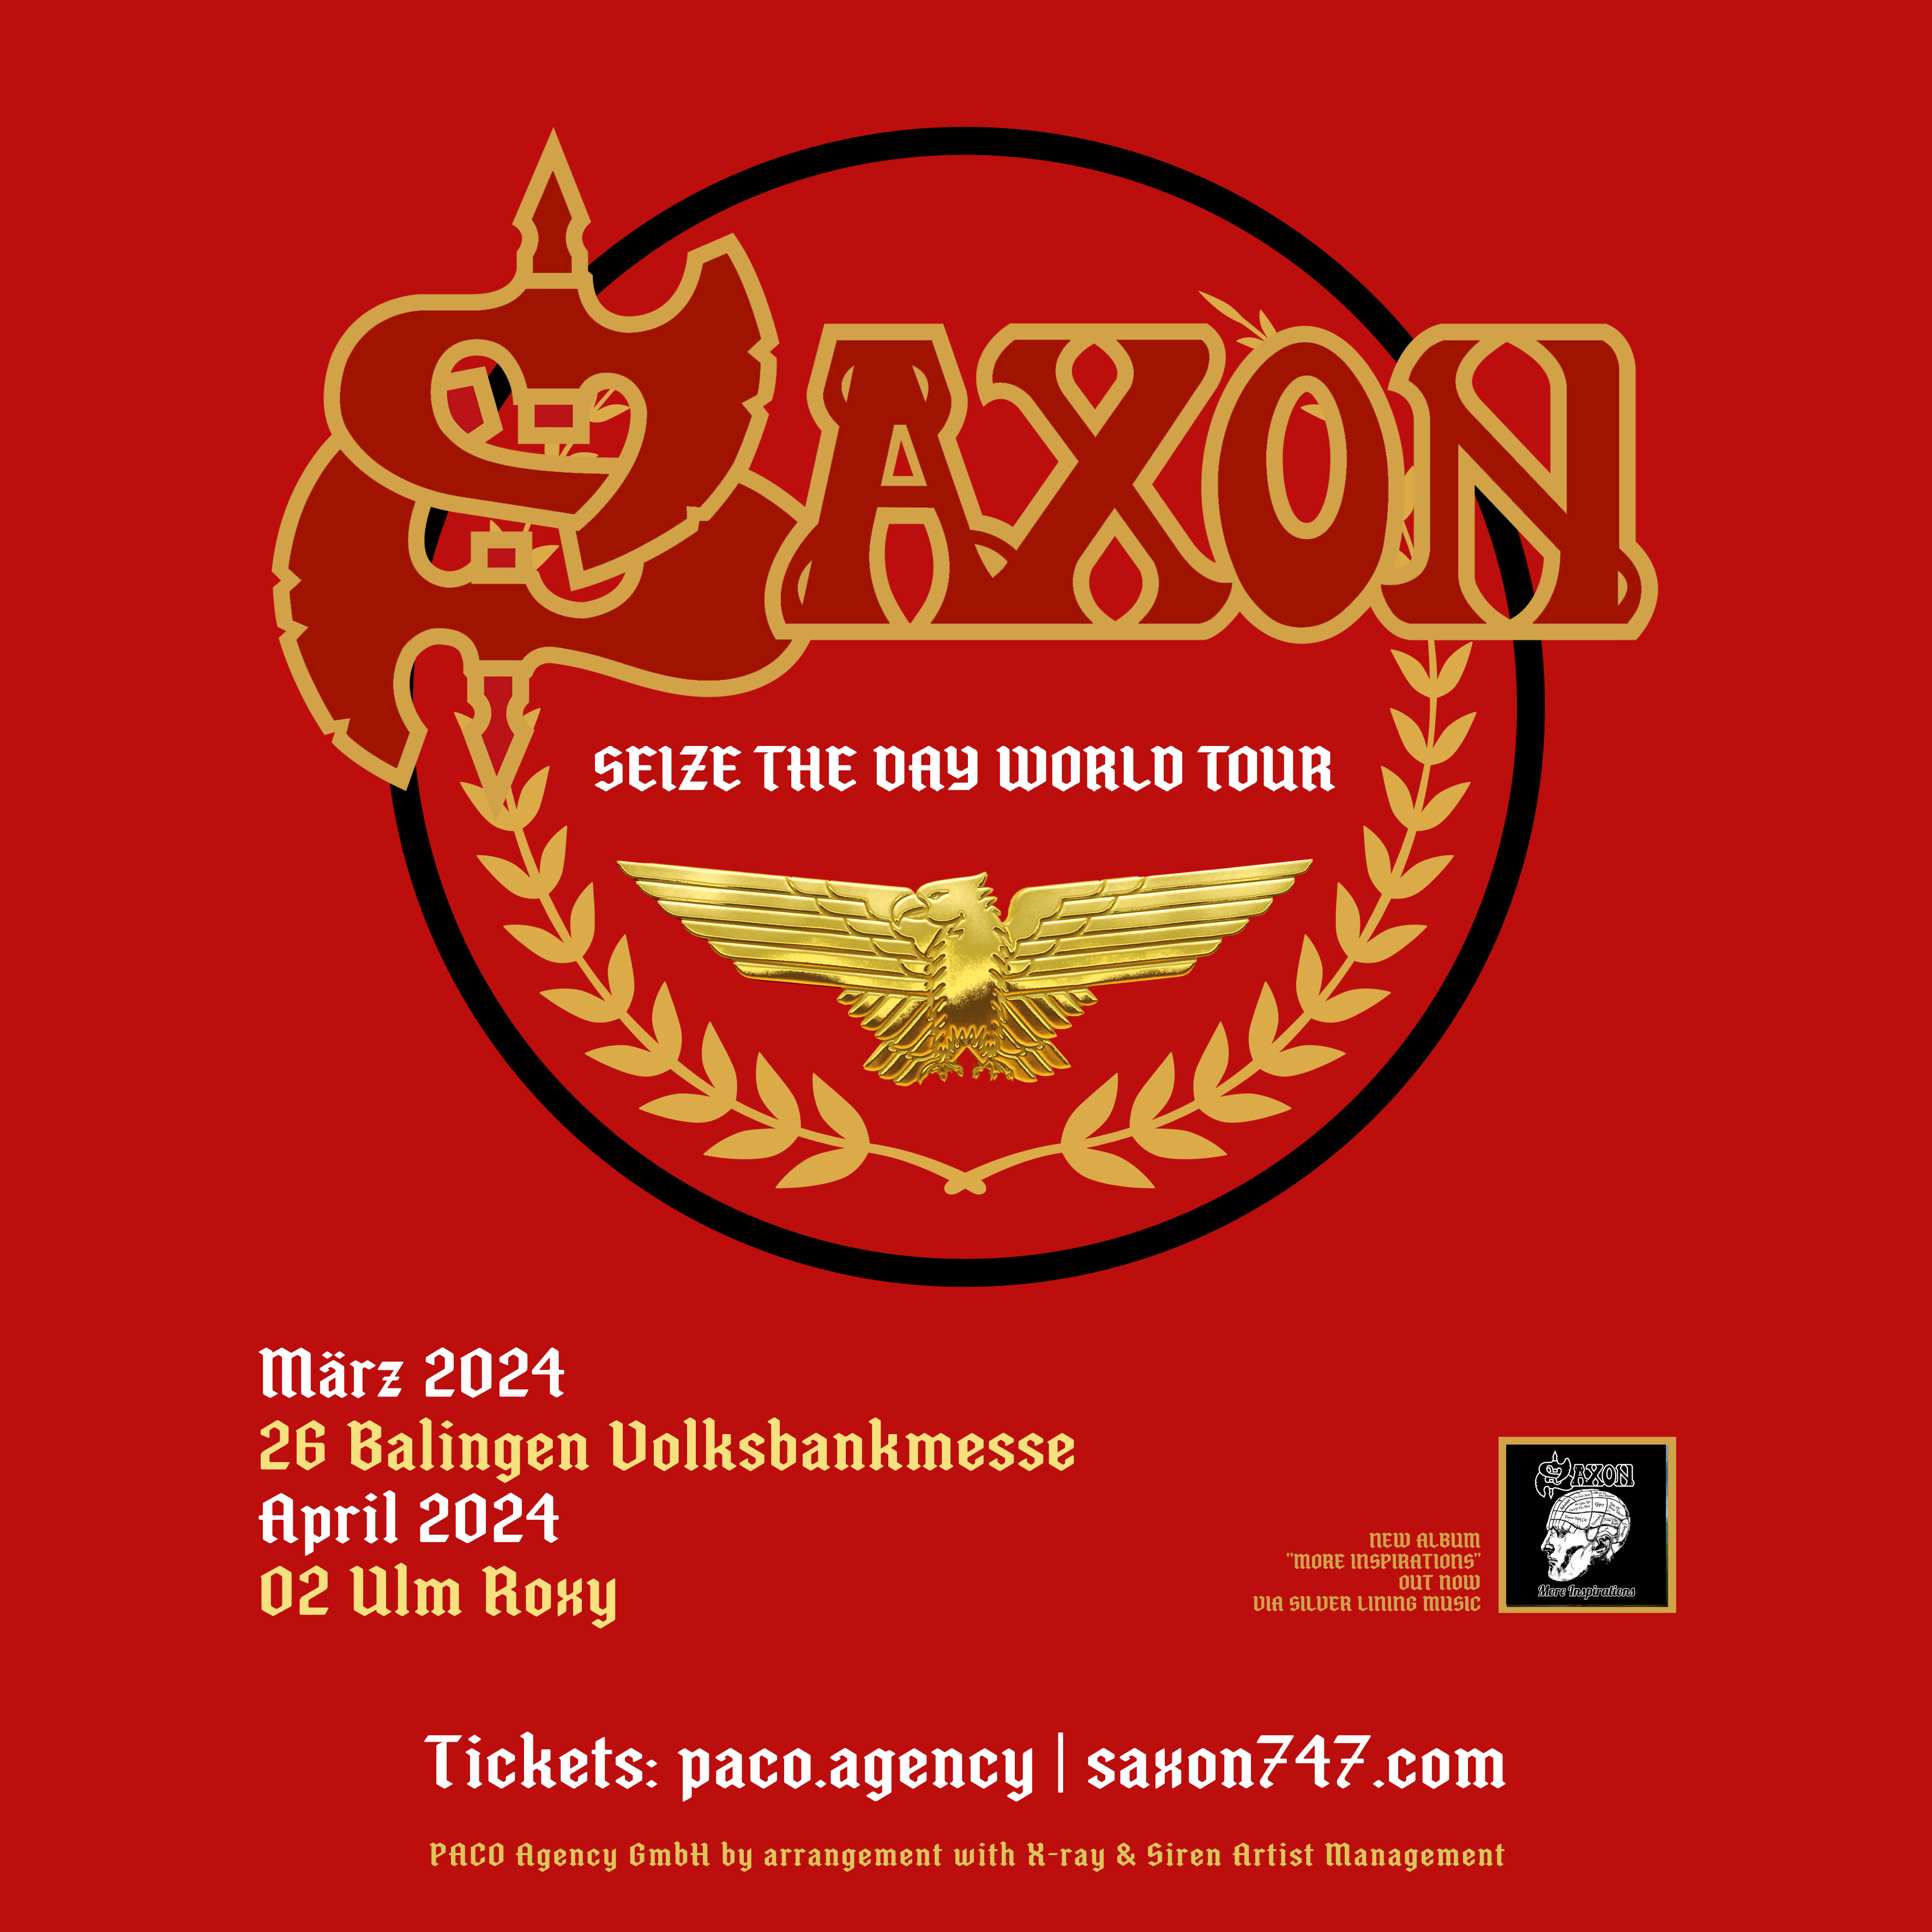 Saxon - "Seize The World Tour"